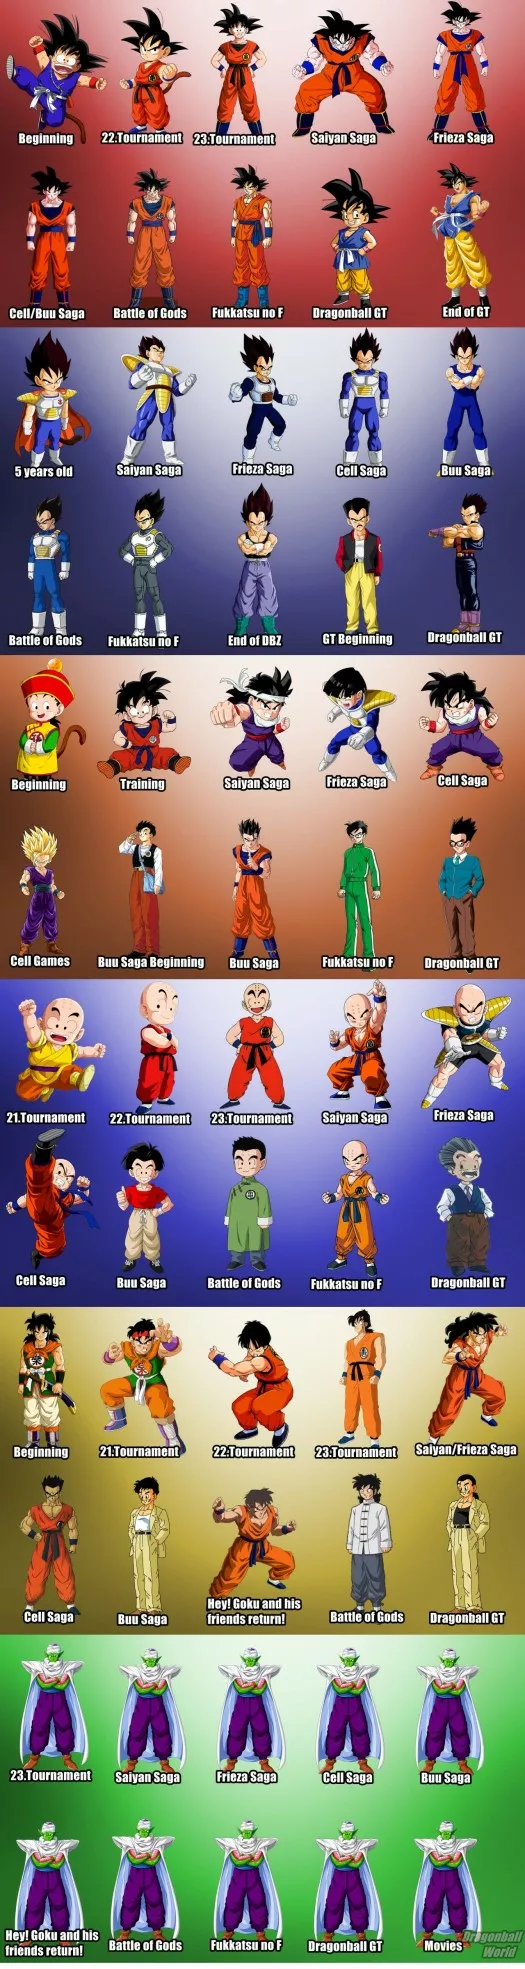 La evolución de los personajes de Dragon ball